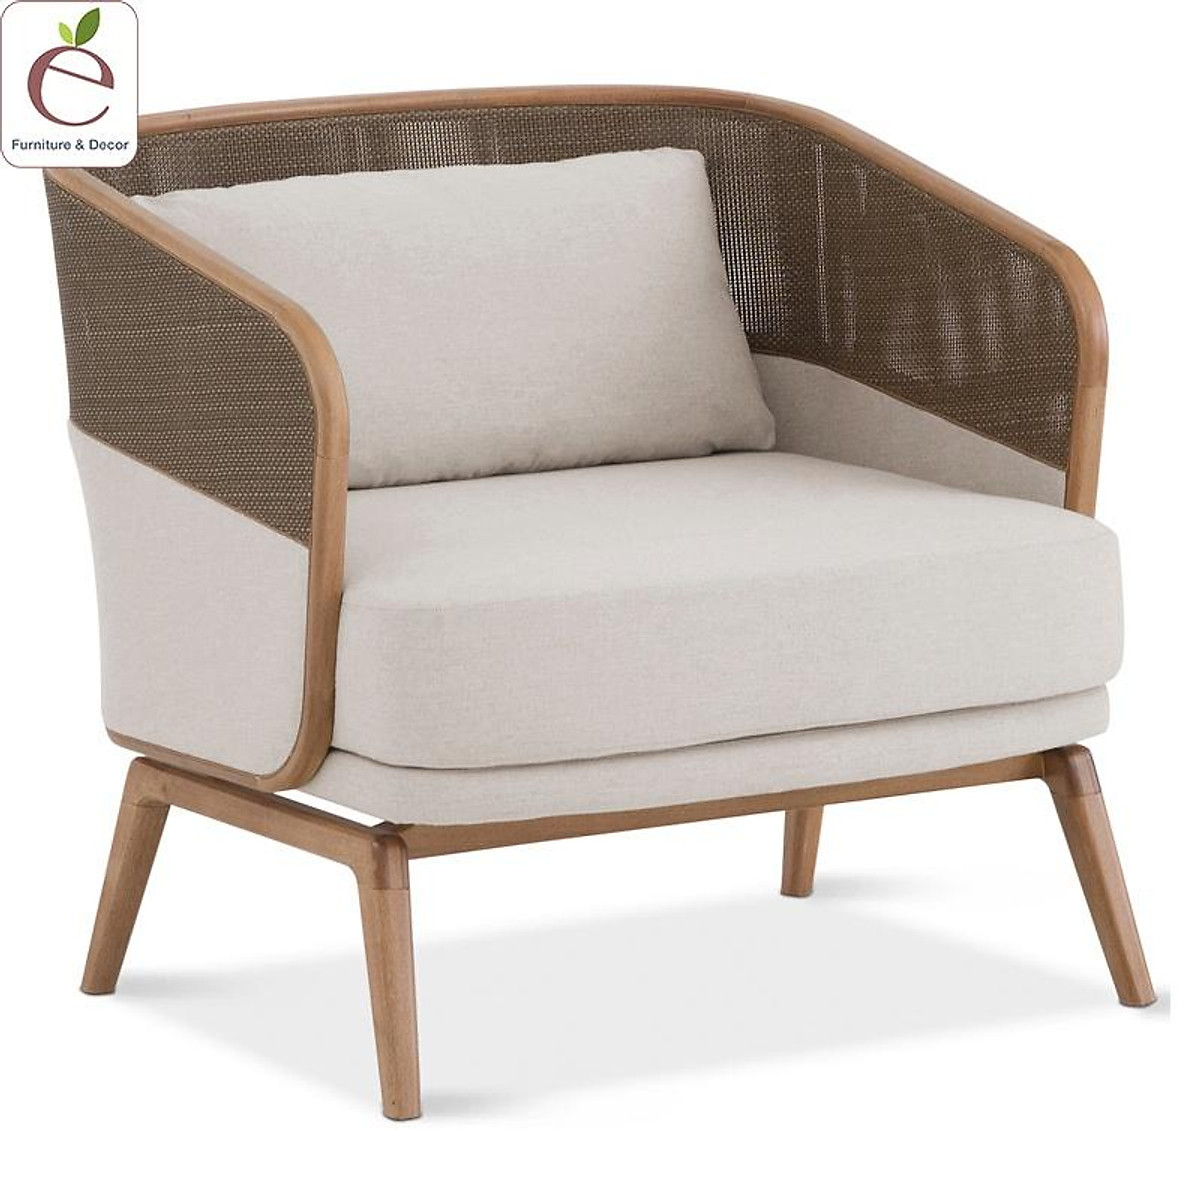 Sofa đơn Capitu gỗ và đan mây tự nhiên: Năm 2024, sofa đơn Capitu gỗ và đan mây tự nhiên đang là sản phẩm ưa chuộng nhất trong thị trường nội thất. Với chất liệu gỗ và đan mây tự nhiên, chiếc sofa đơn Capitu mang đến không gian sống thoải mái, tự nhiên và thân thiện. Hãy khám phá hình ảnh bên dưới để cảm nhận sự tuyệt vời của chiếc sofa đơn Capitu này.